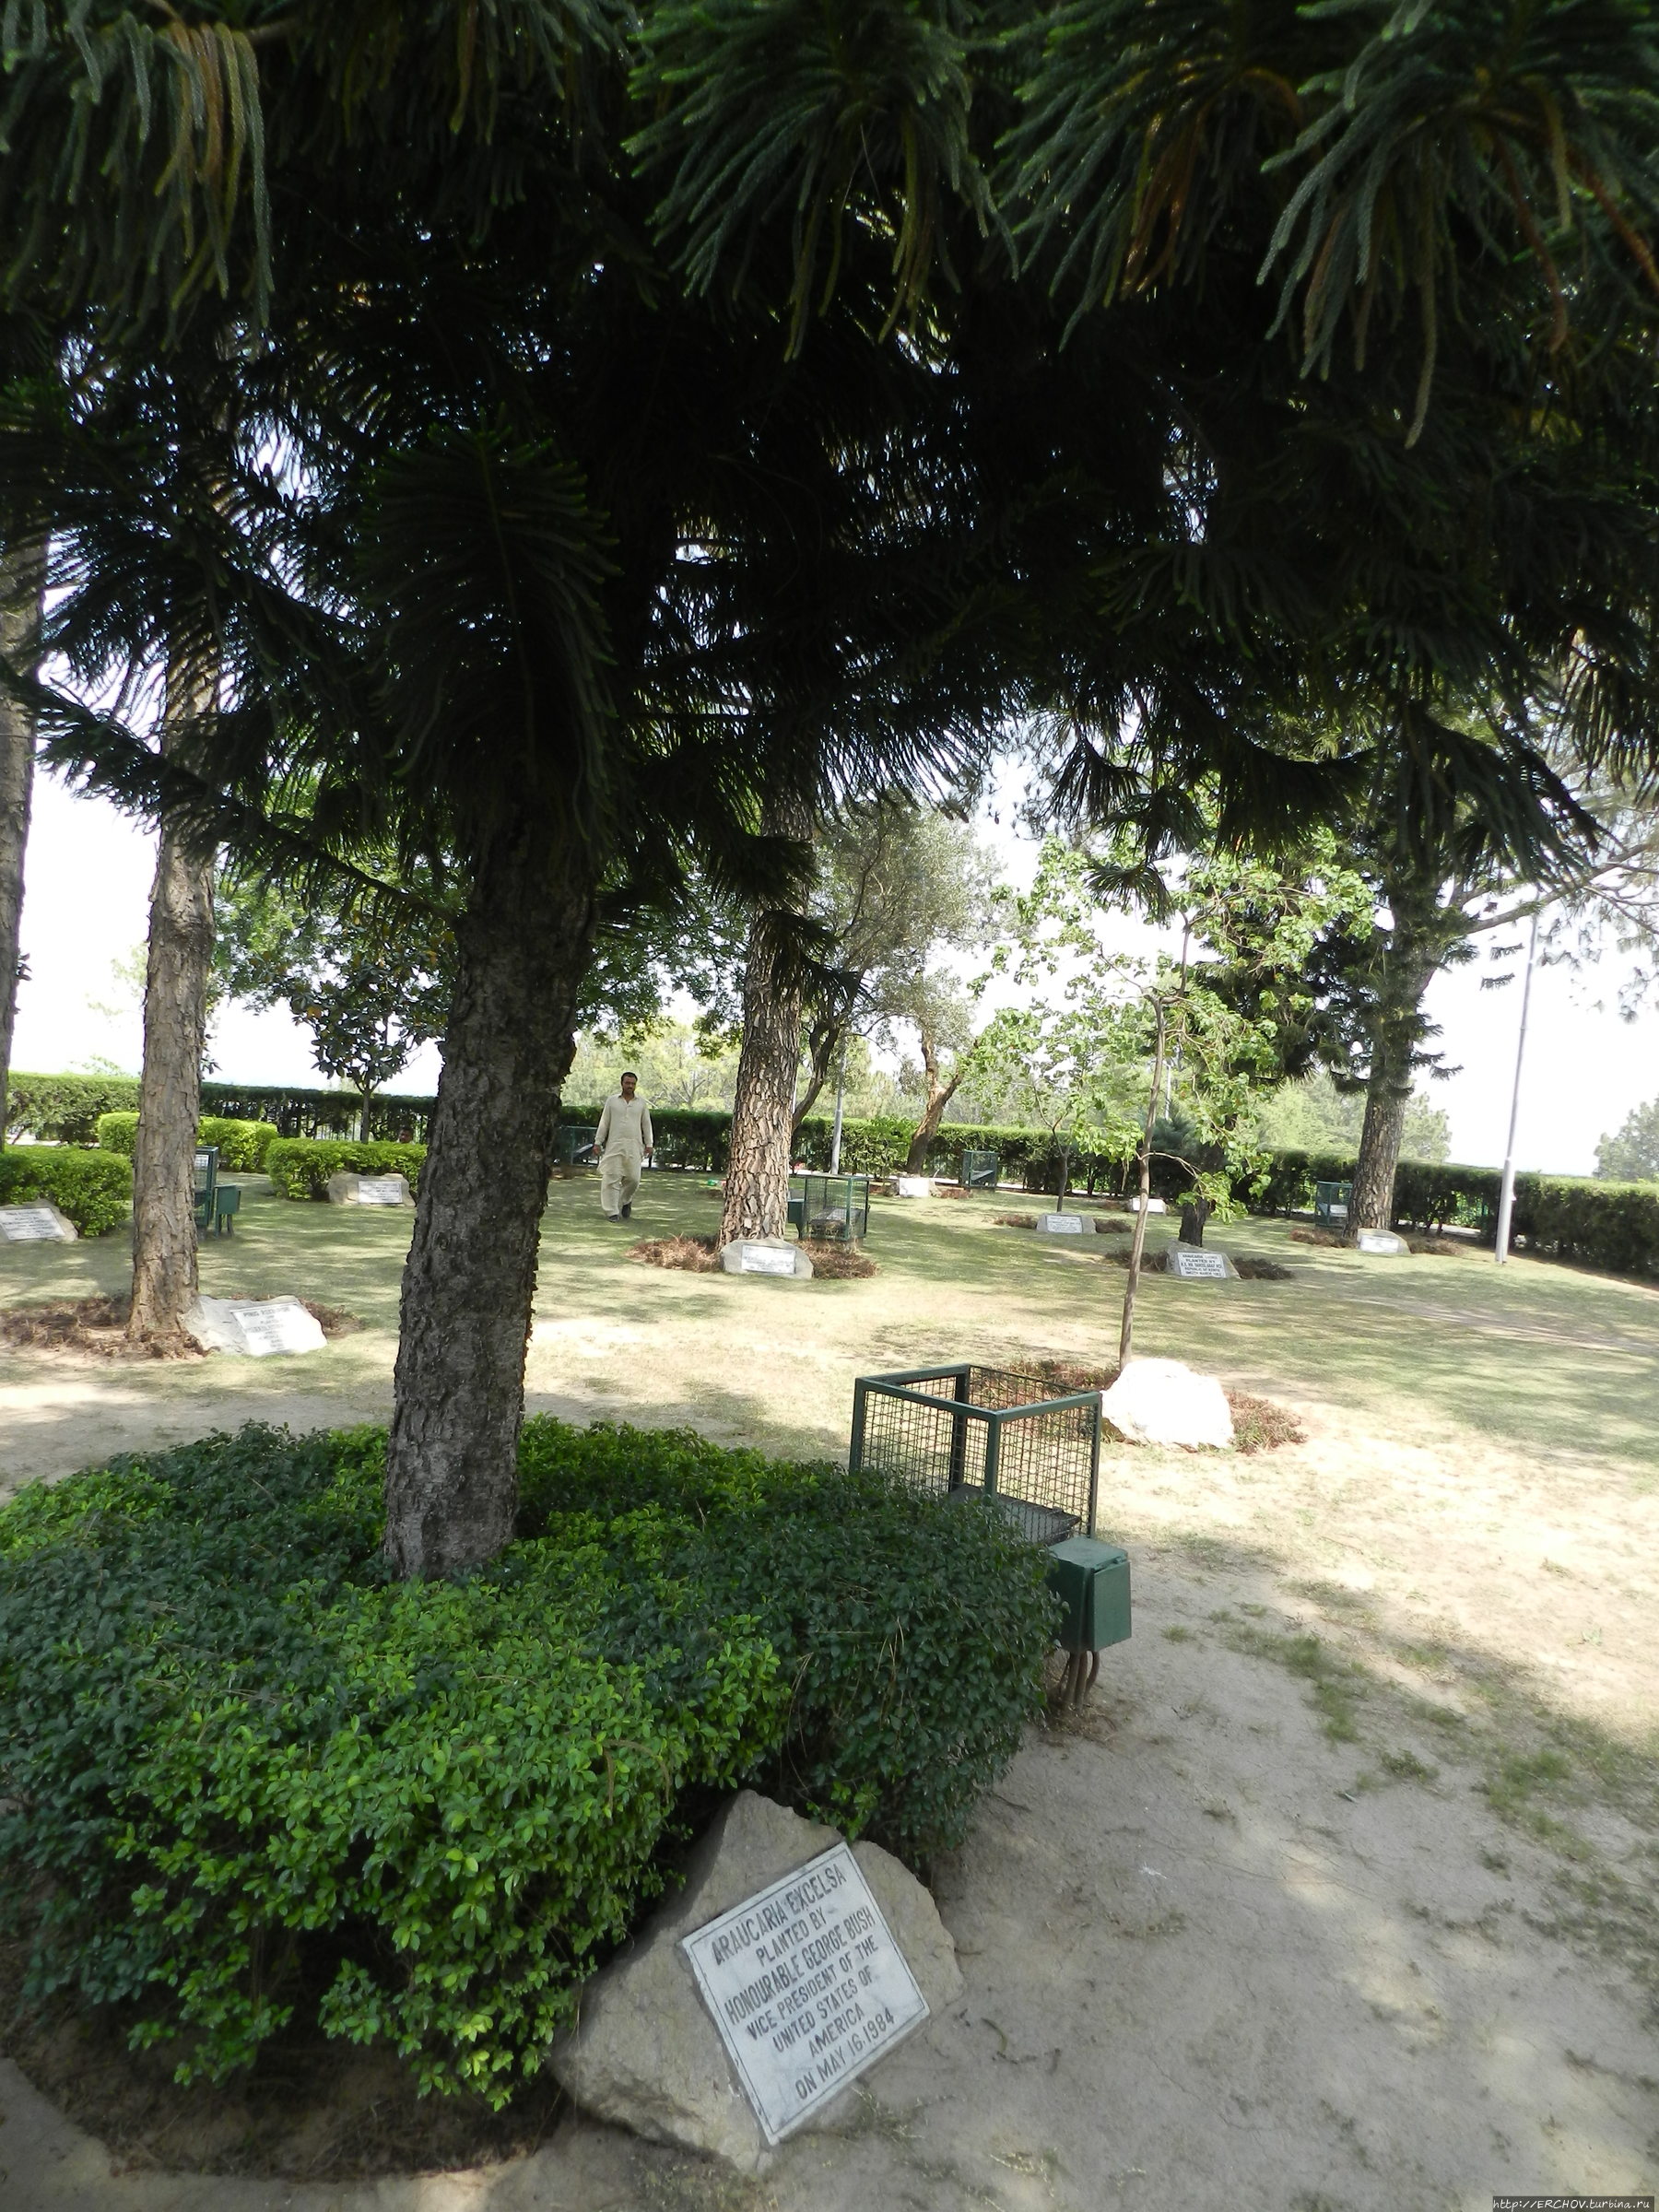 Пакистан.Ч-11.  Айюб Хан. Зальфикар Бхутто. Равальское озеро Исламабад, Пакистан